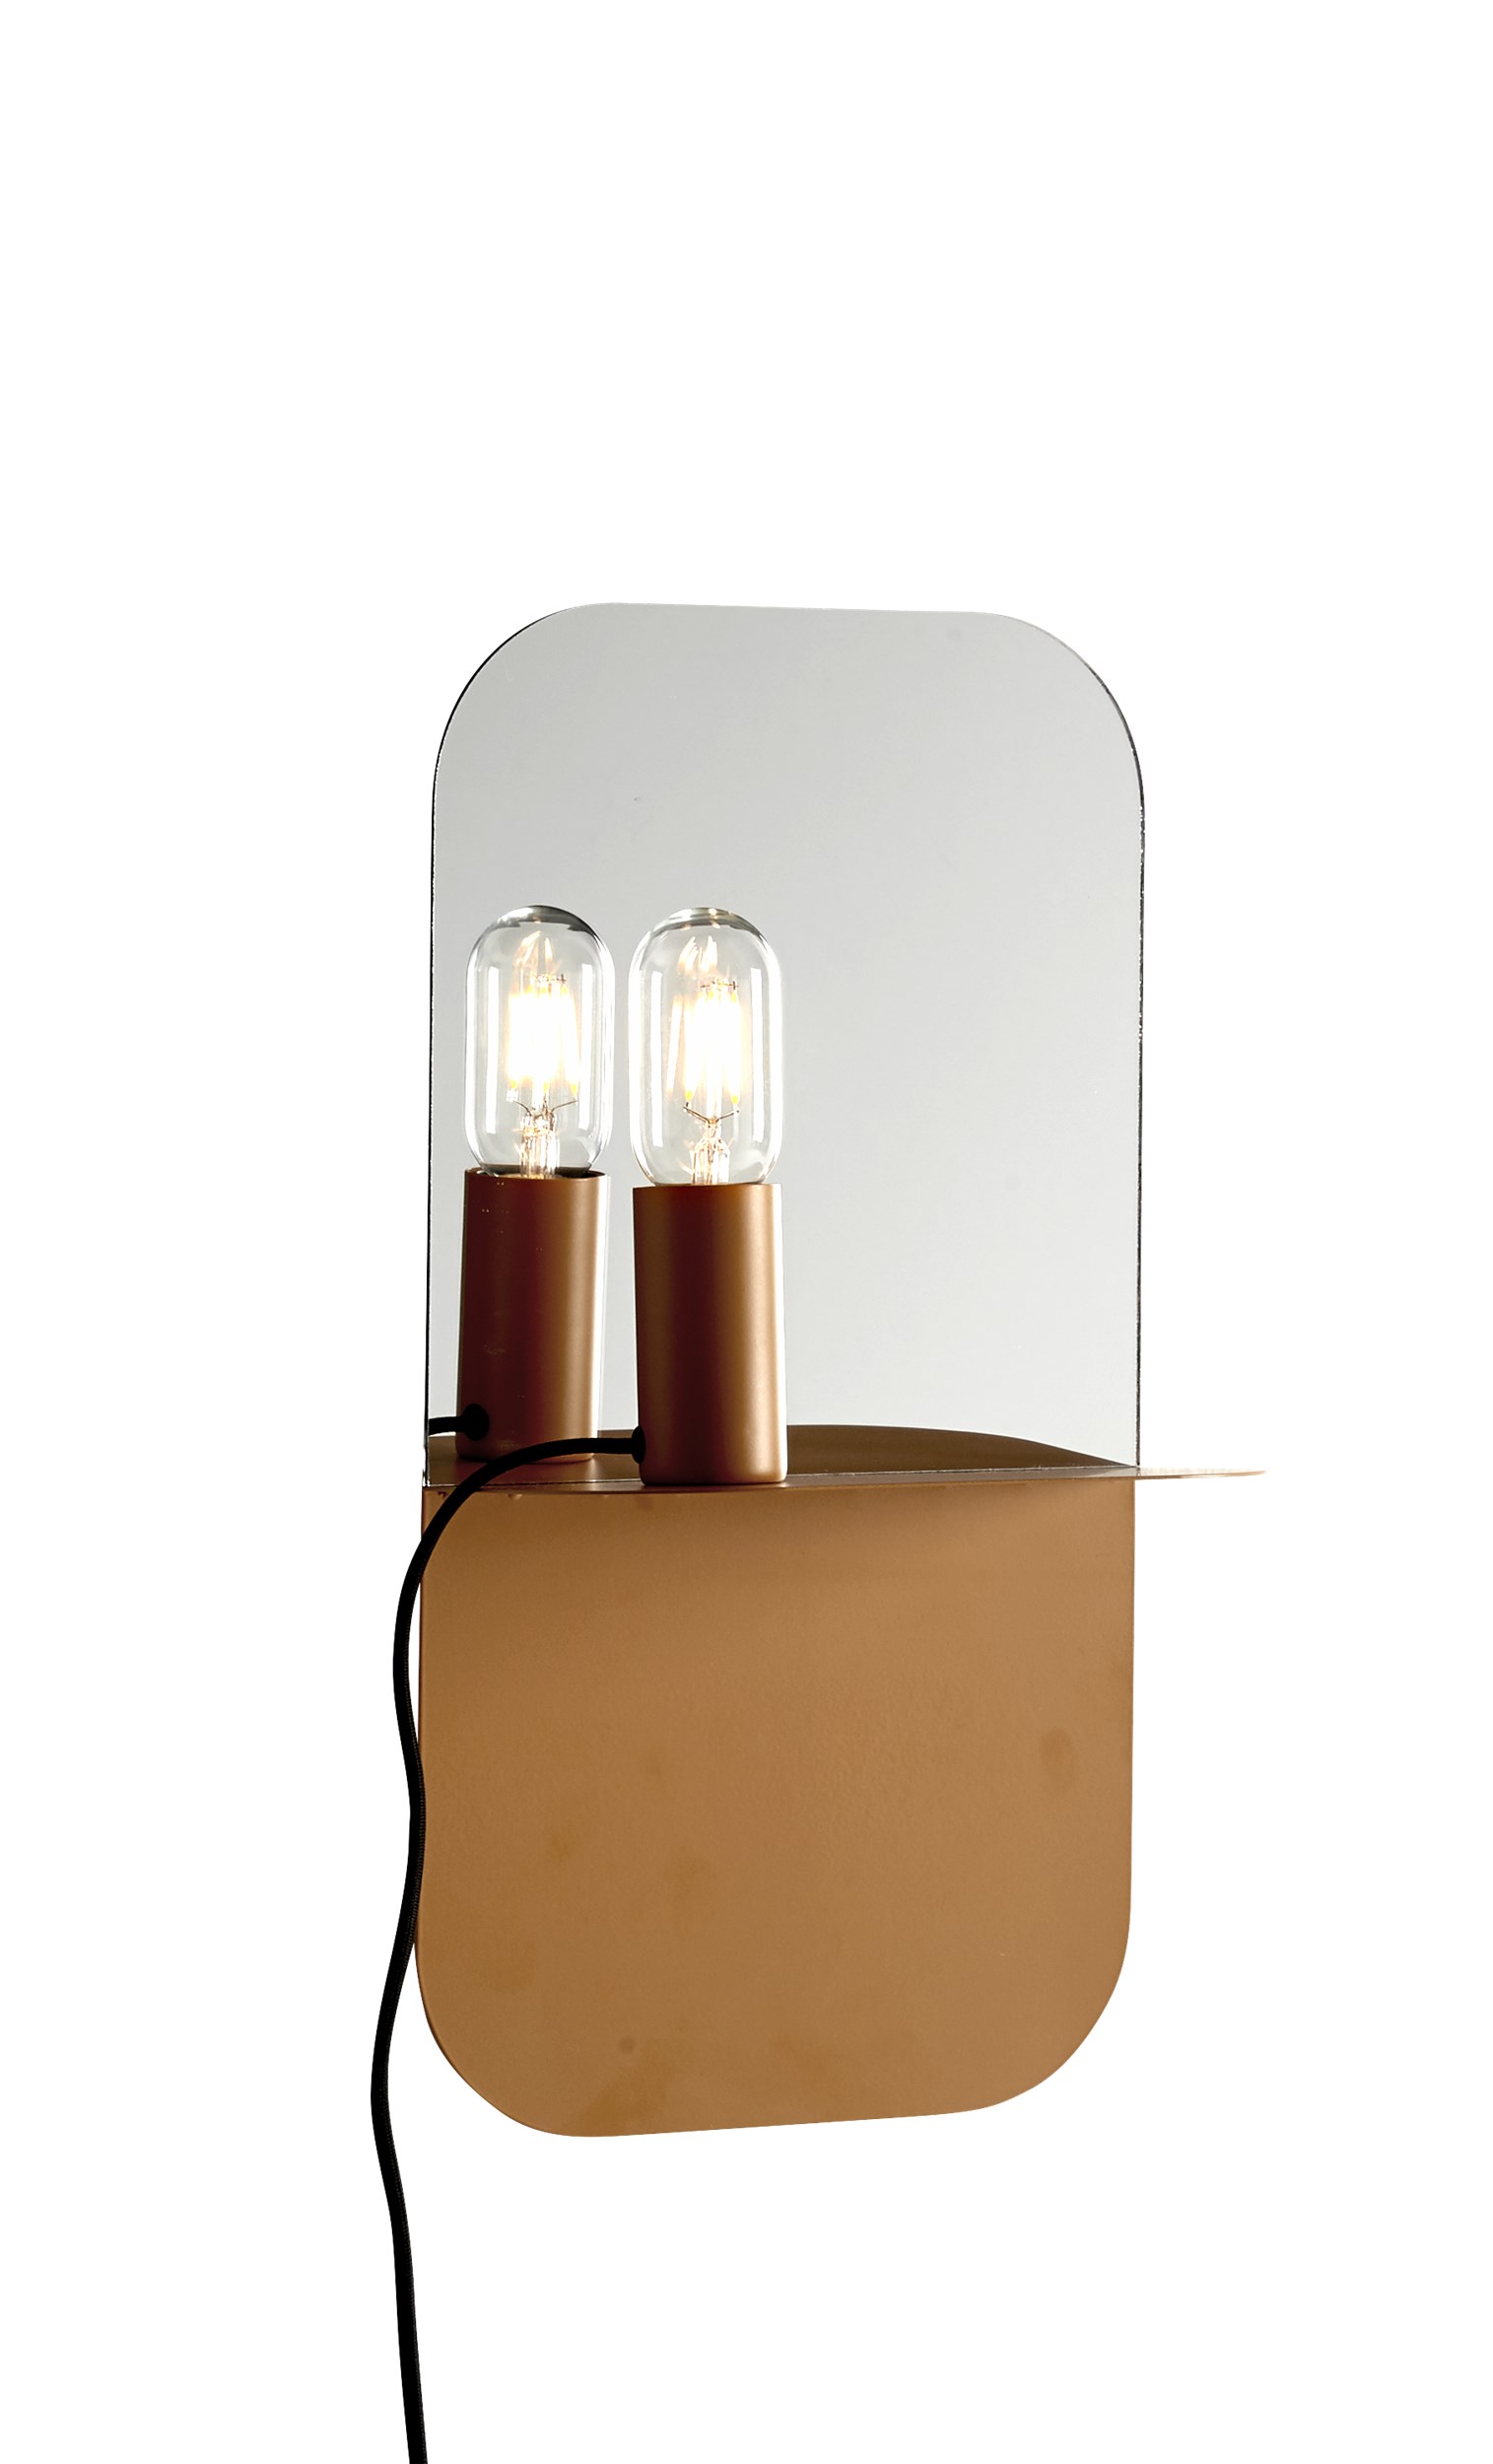 Plate Væglampe 24 x 45 x 12 cm - Mat gul metal med hylde og spejl, Magnetisk flytbar fatning og sort tekstilledning